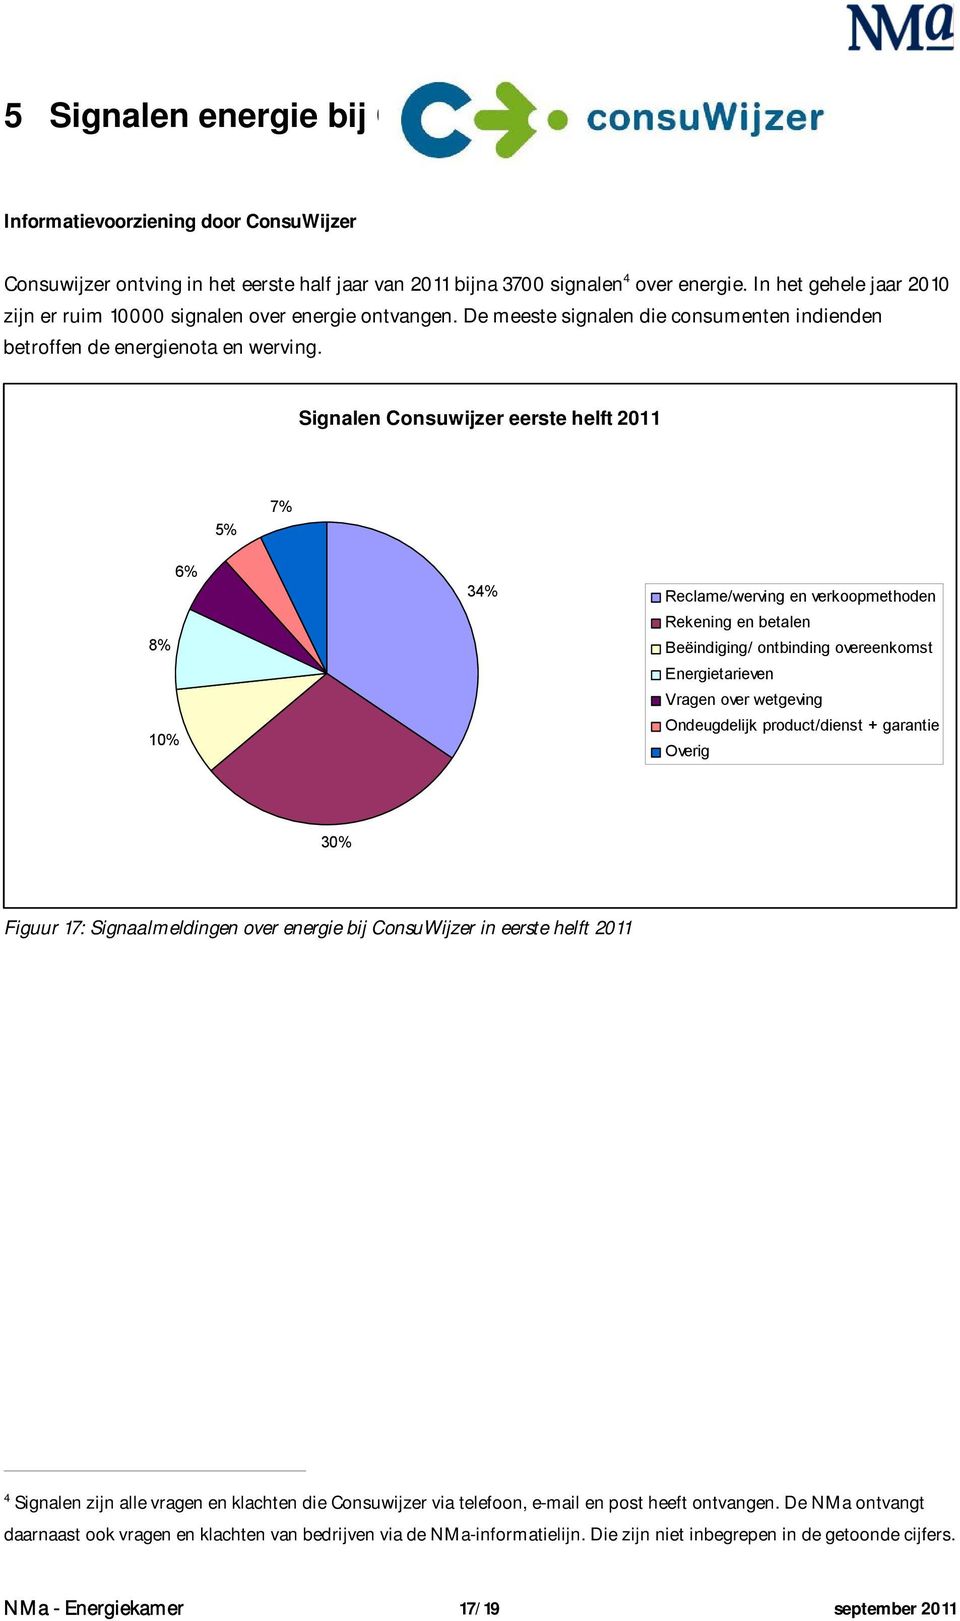 Signalen Consuwijzer eerste helft 2011 5% 7% 8% 10% 6% 34% Reclame/werving en verkoopmethoden Rekening en betalen Beëindiging/ ontbinding overeenkomst Energietarieven Vragen over wetgeving